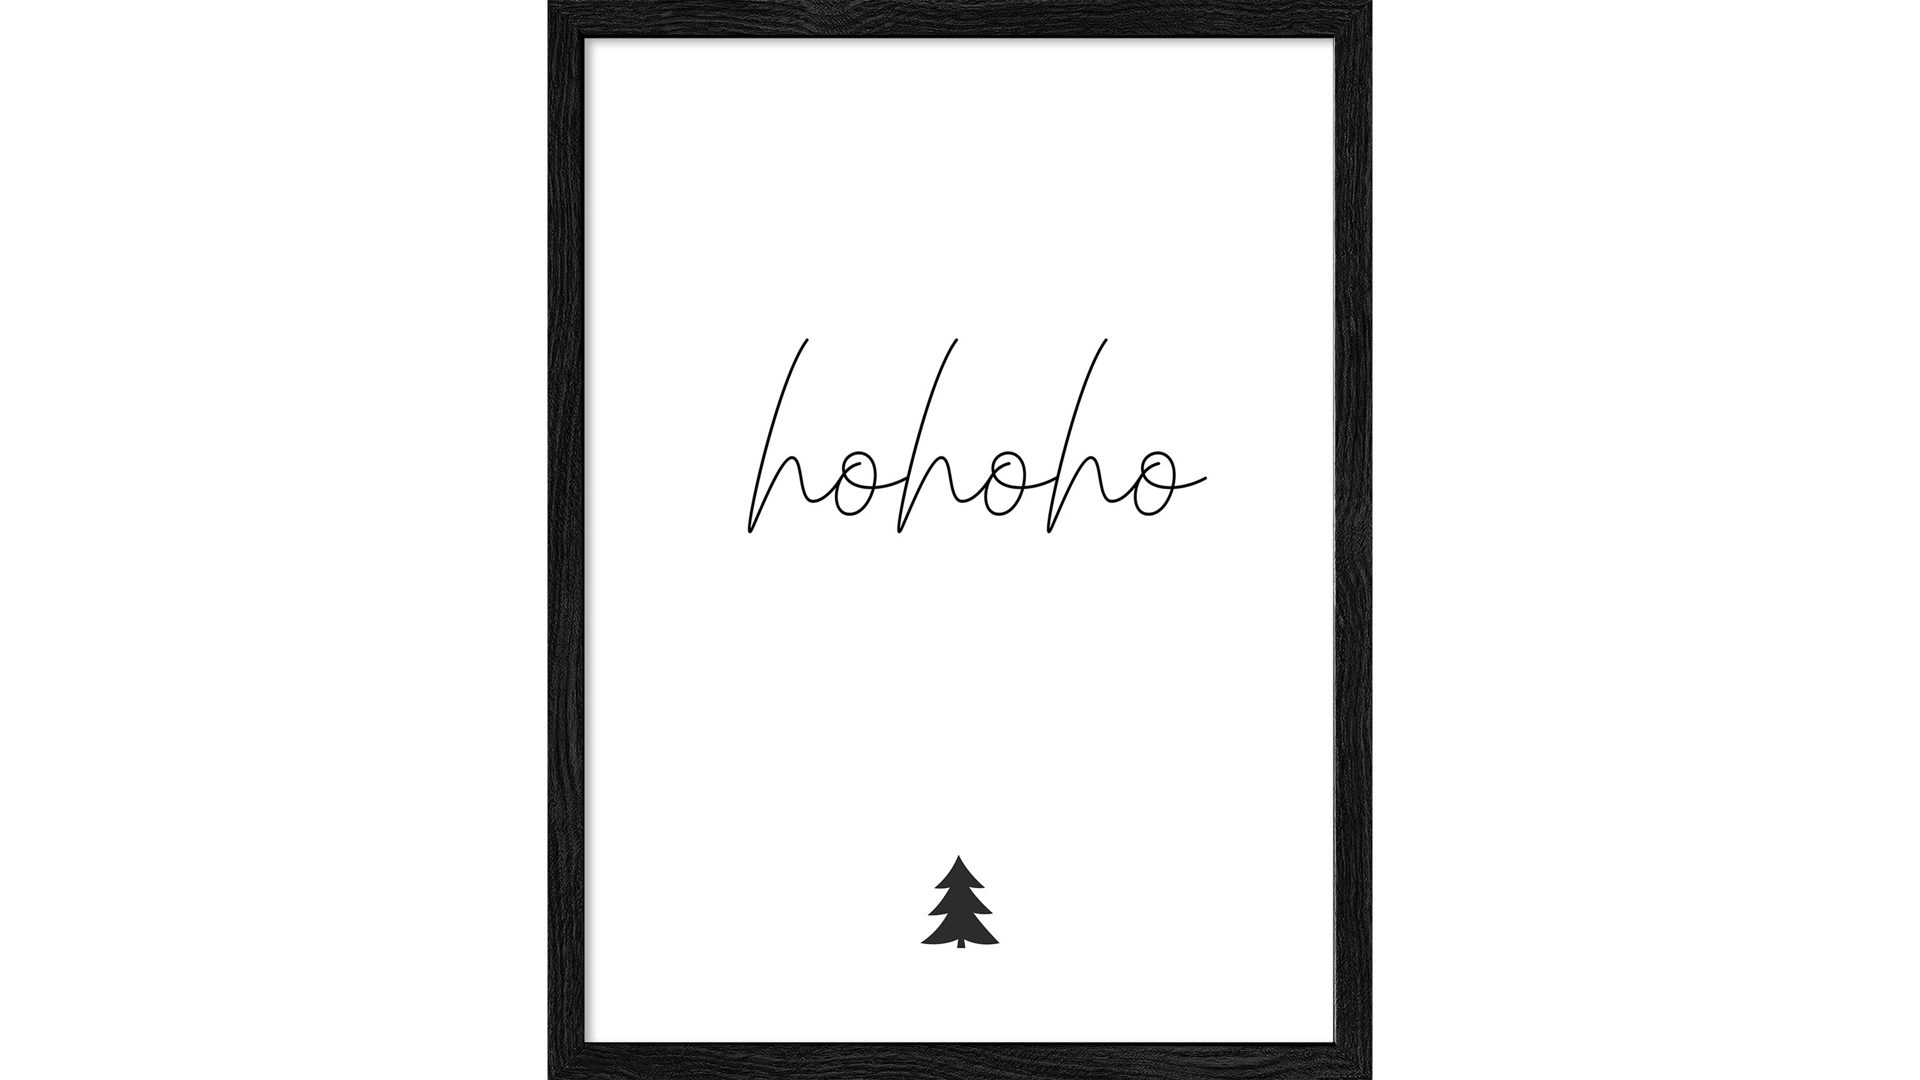 Kunstdruck Pro®art bilderpalette aus Karton / Papier / Pappe in Weiß PRO®ART Kunstdruck Christmas 4 Weiß & Schwarz - ca. 33 x 43 cm